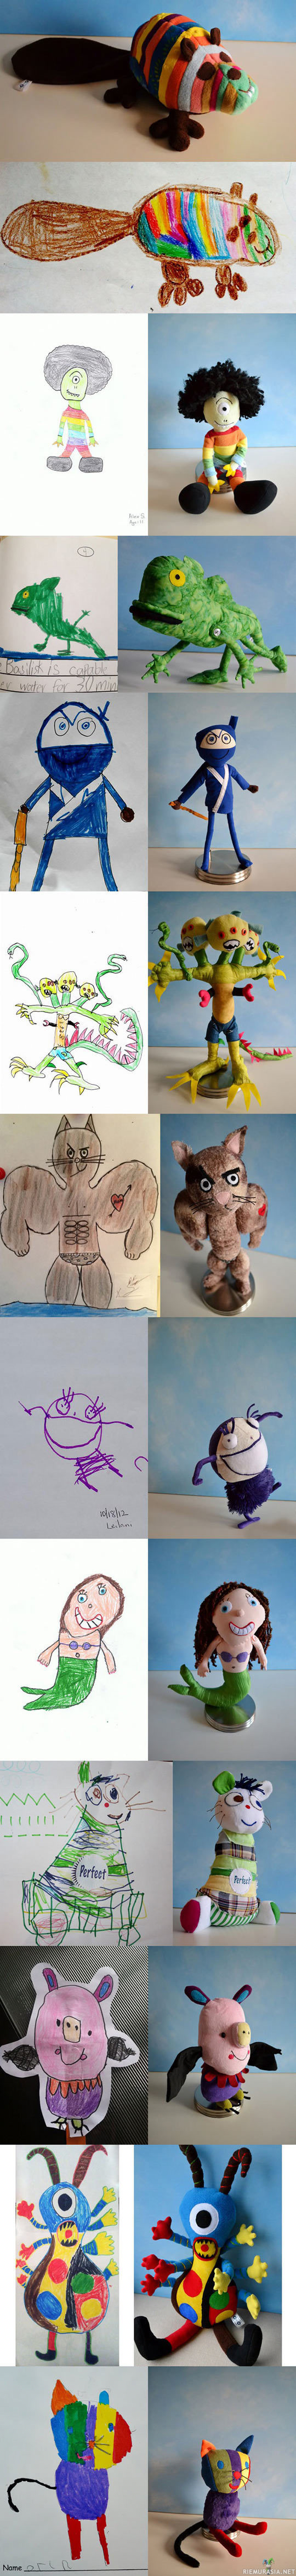 Taas kerran lasten piirustuksista tehtiin kasa pehmoleluja - Taiteilija käytti inspiraationaan lasten piirustuksia ja valmisti niiden perusteella todella näyttäviä pehmoleluja!